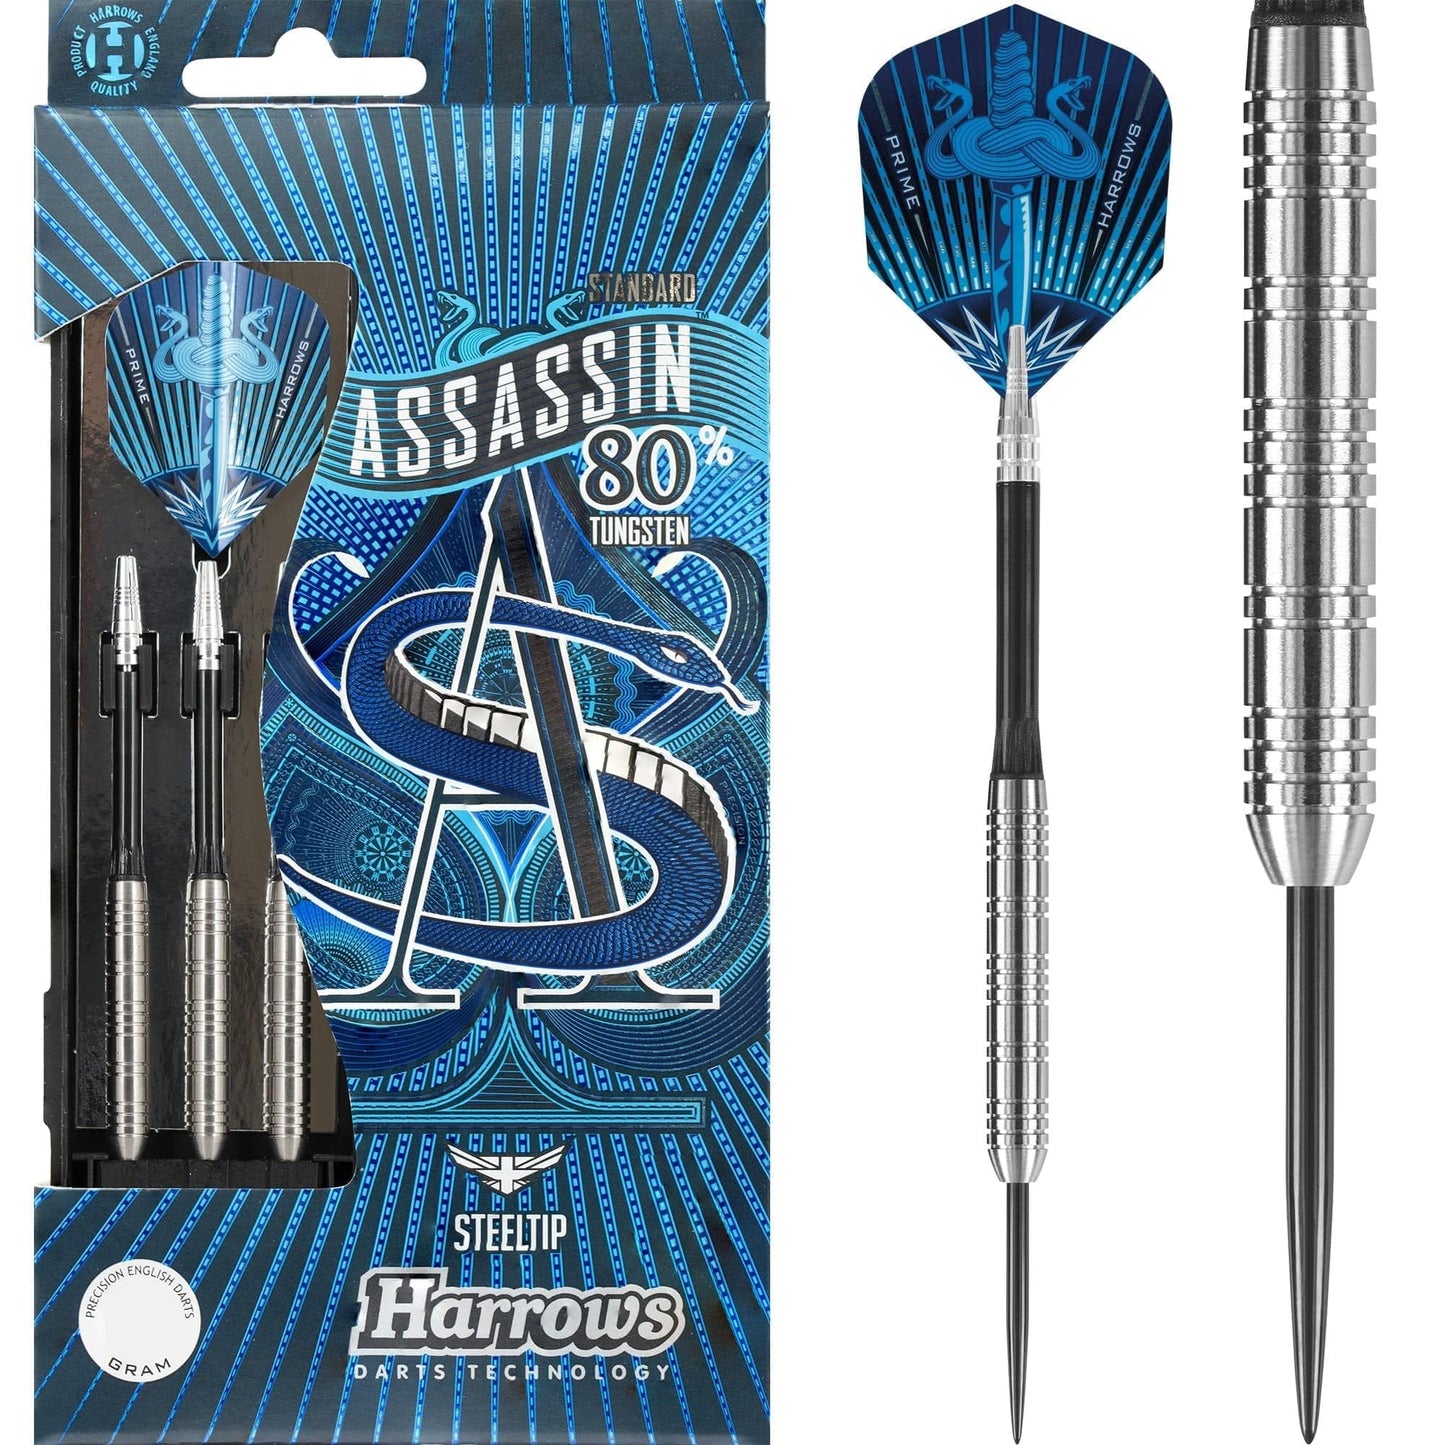 Harrows Assassin Darts - Steel Tip - Std - Ringed - 18g 18gPERS